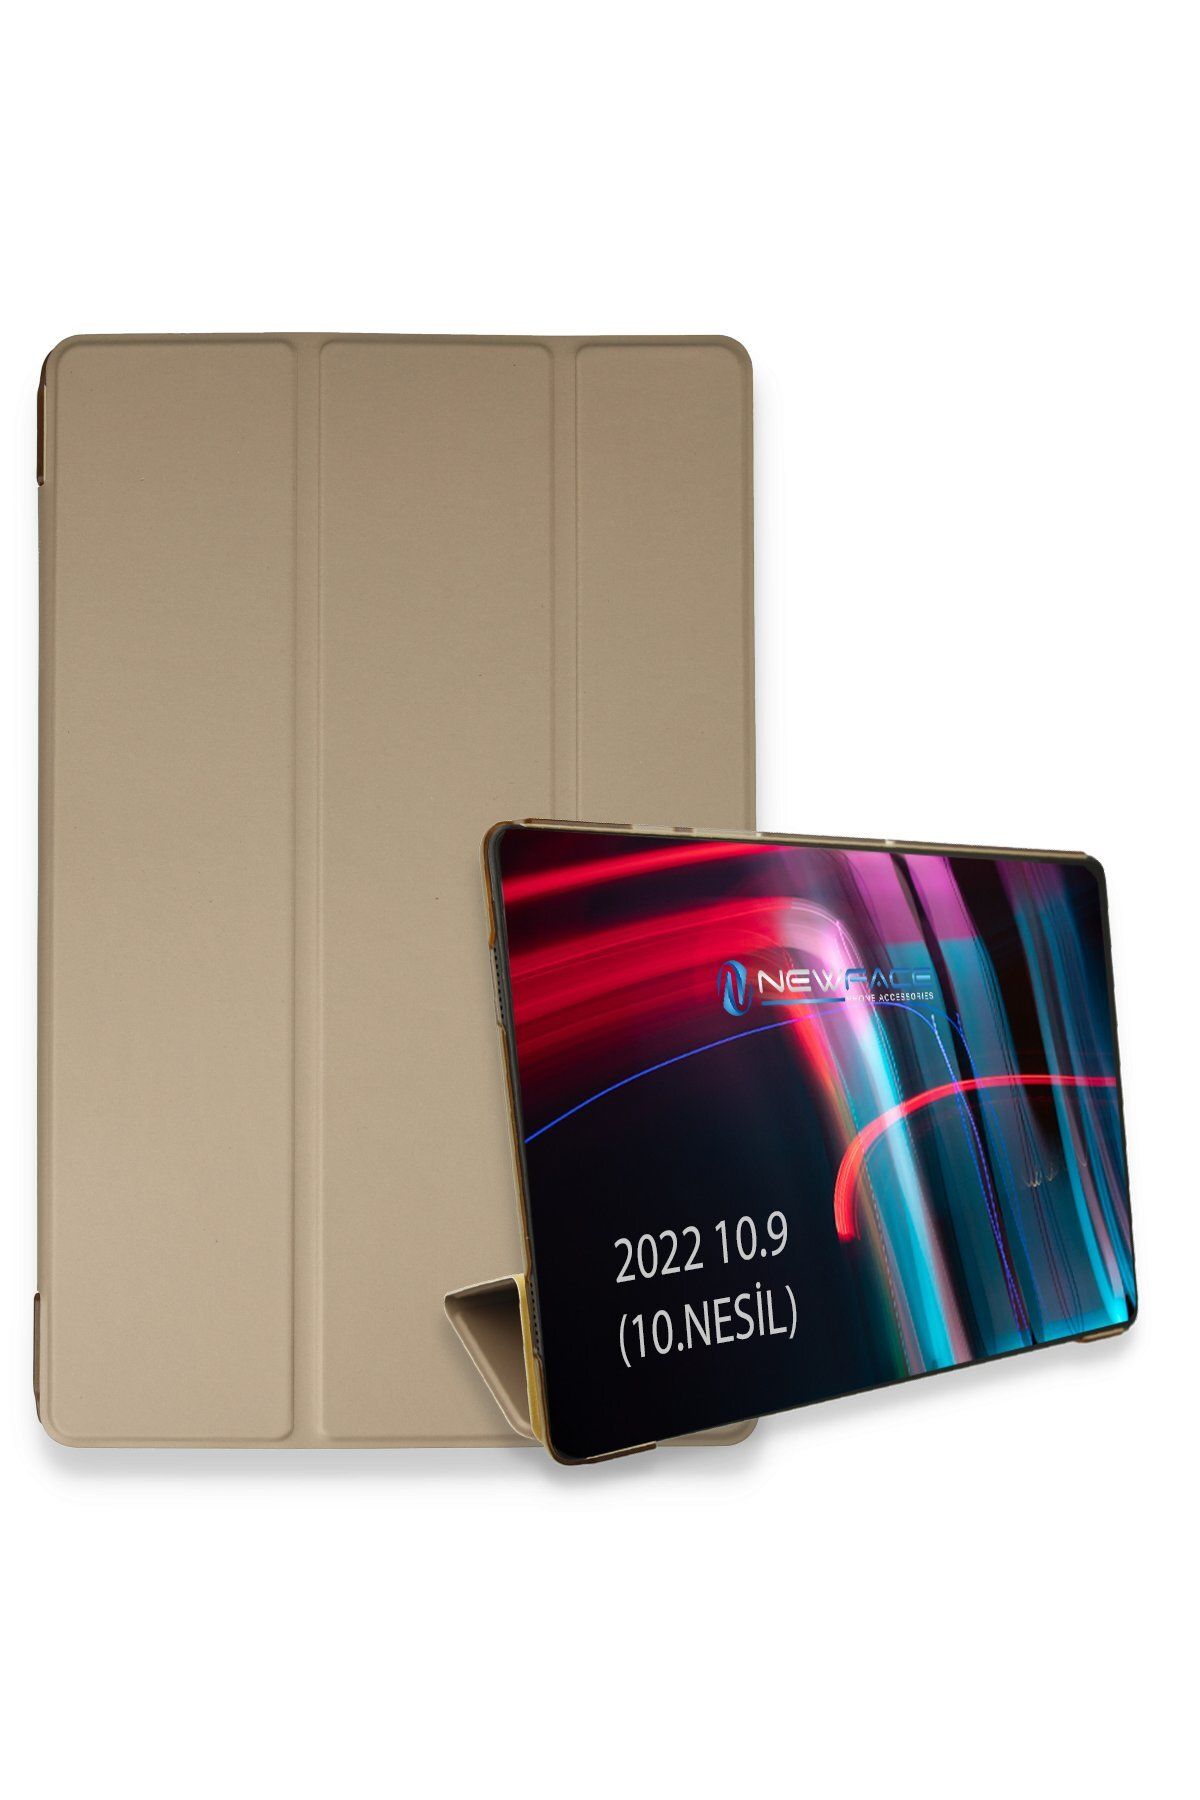 NewFace iPad 2022 10.9 (10.nesil)Uyumlu   Kılıf Tablet Smart Kılıf - Gold 307104